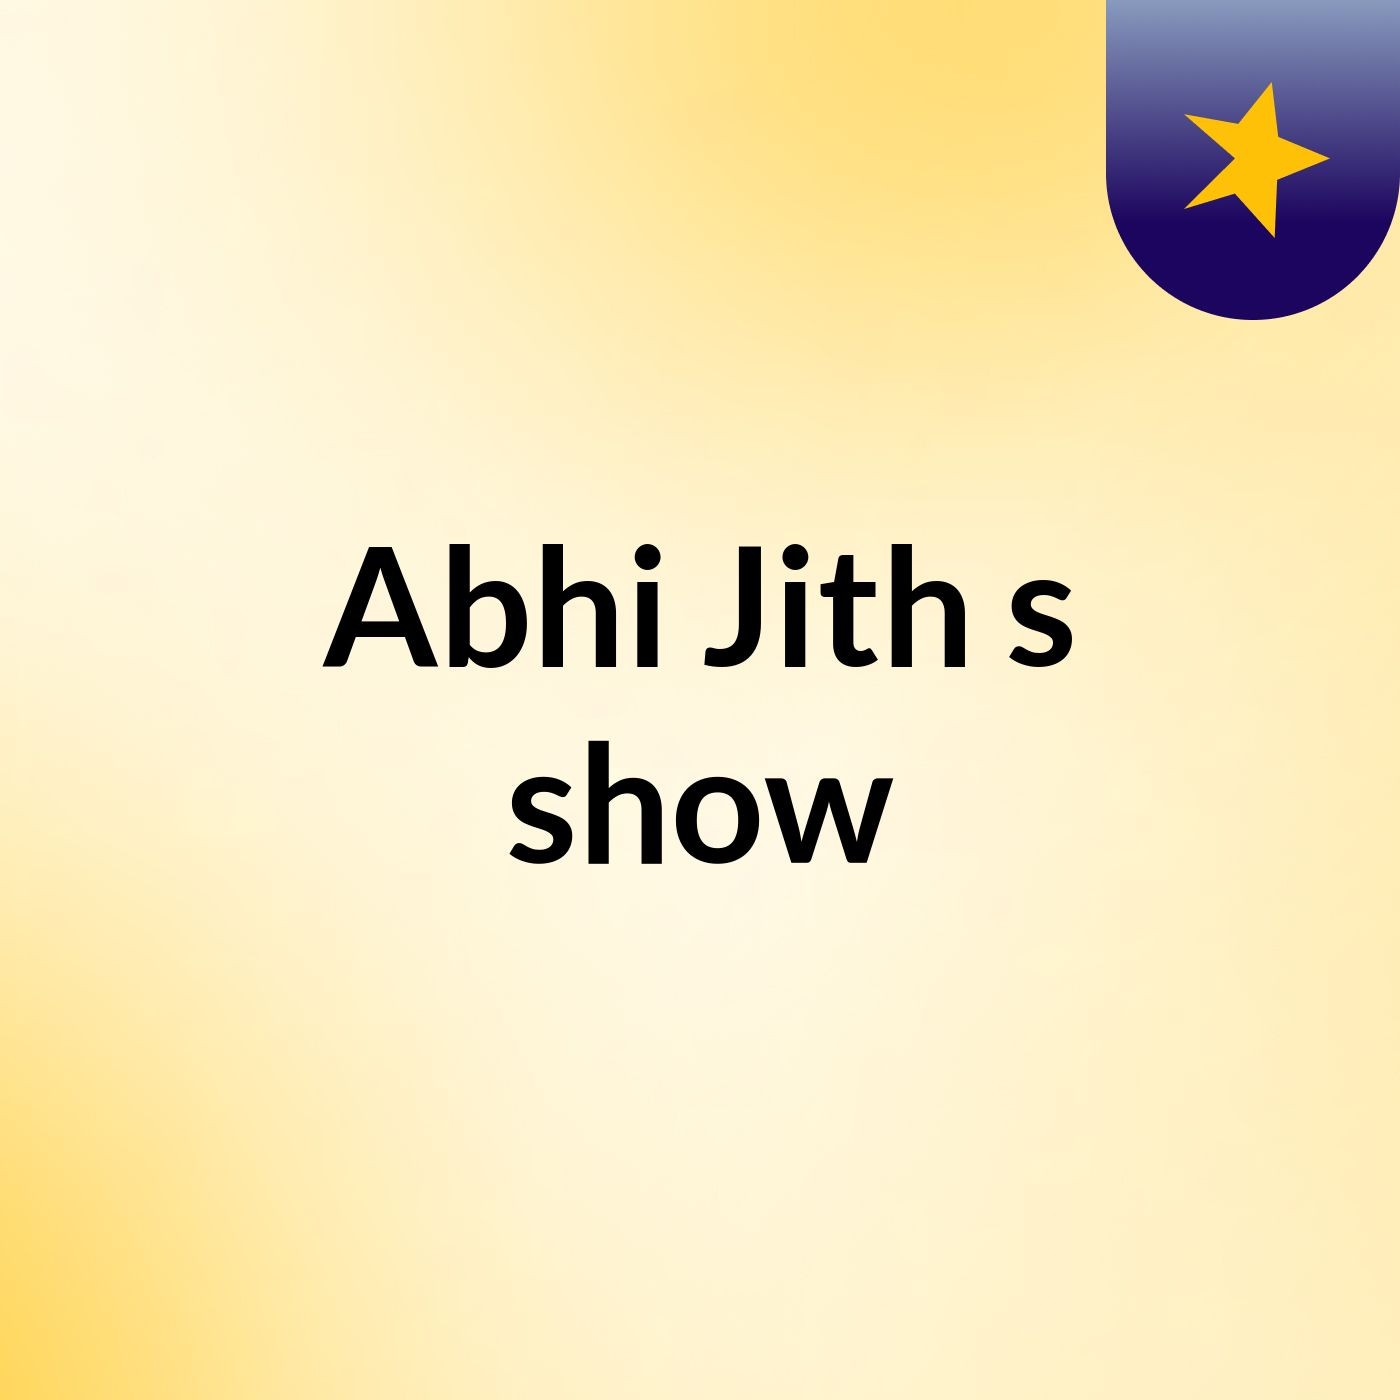 Abhi Jith's show